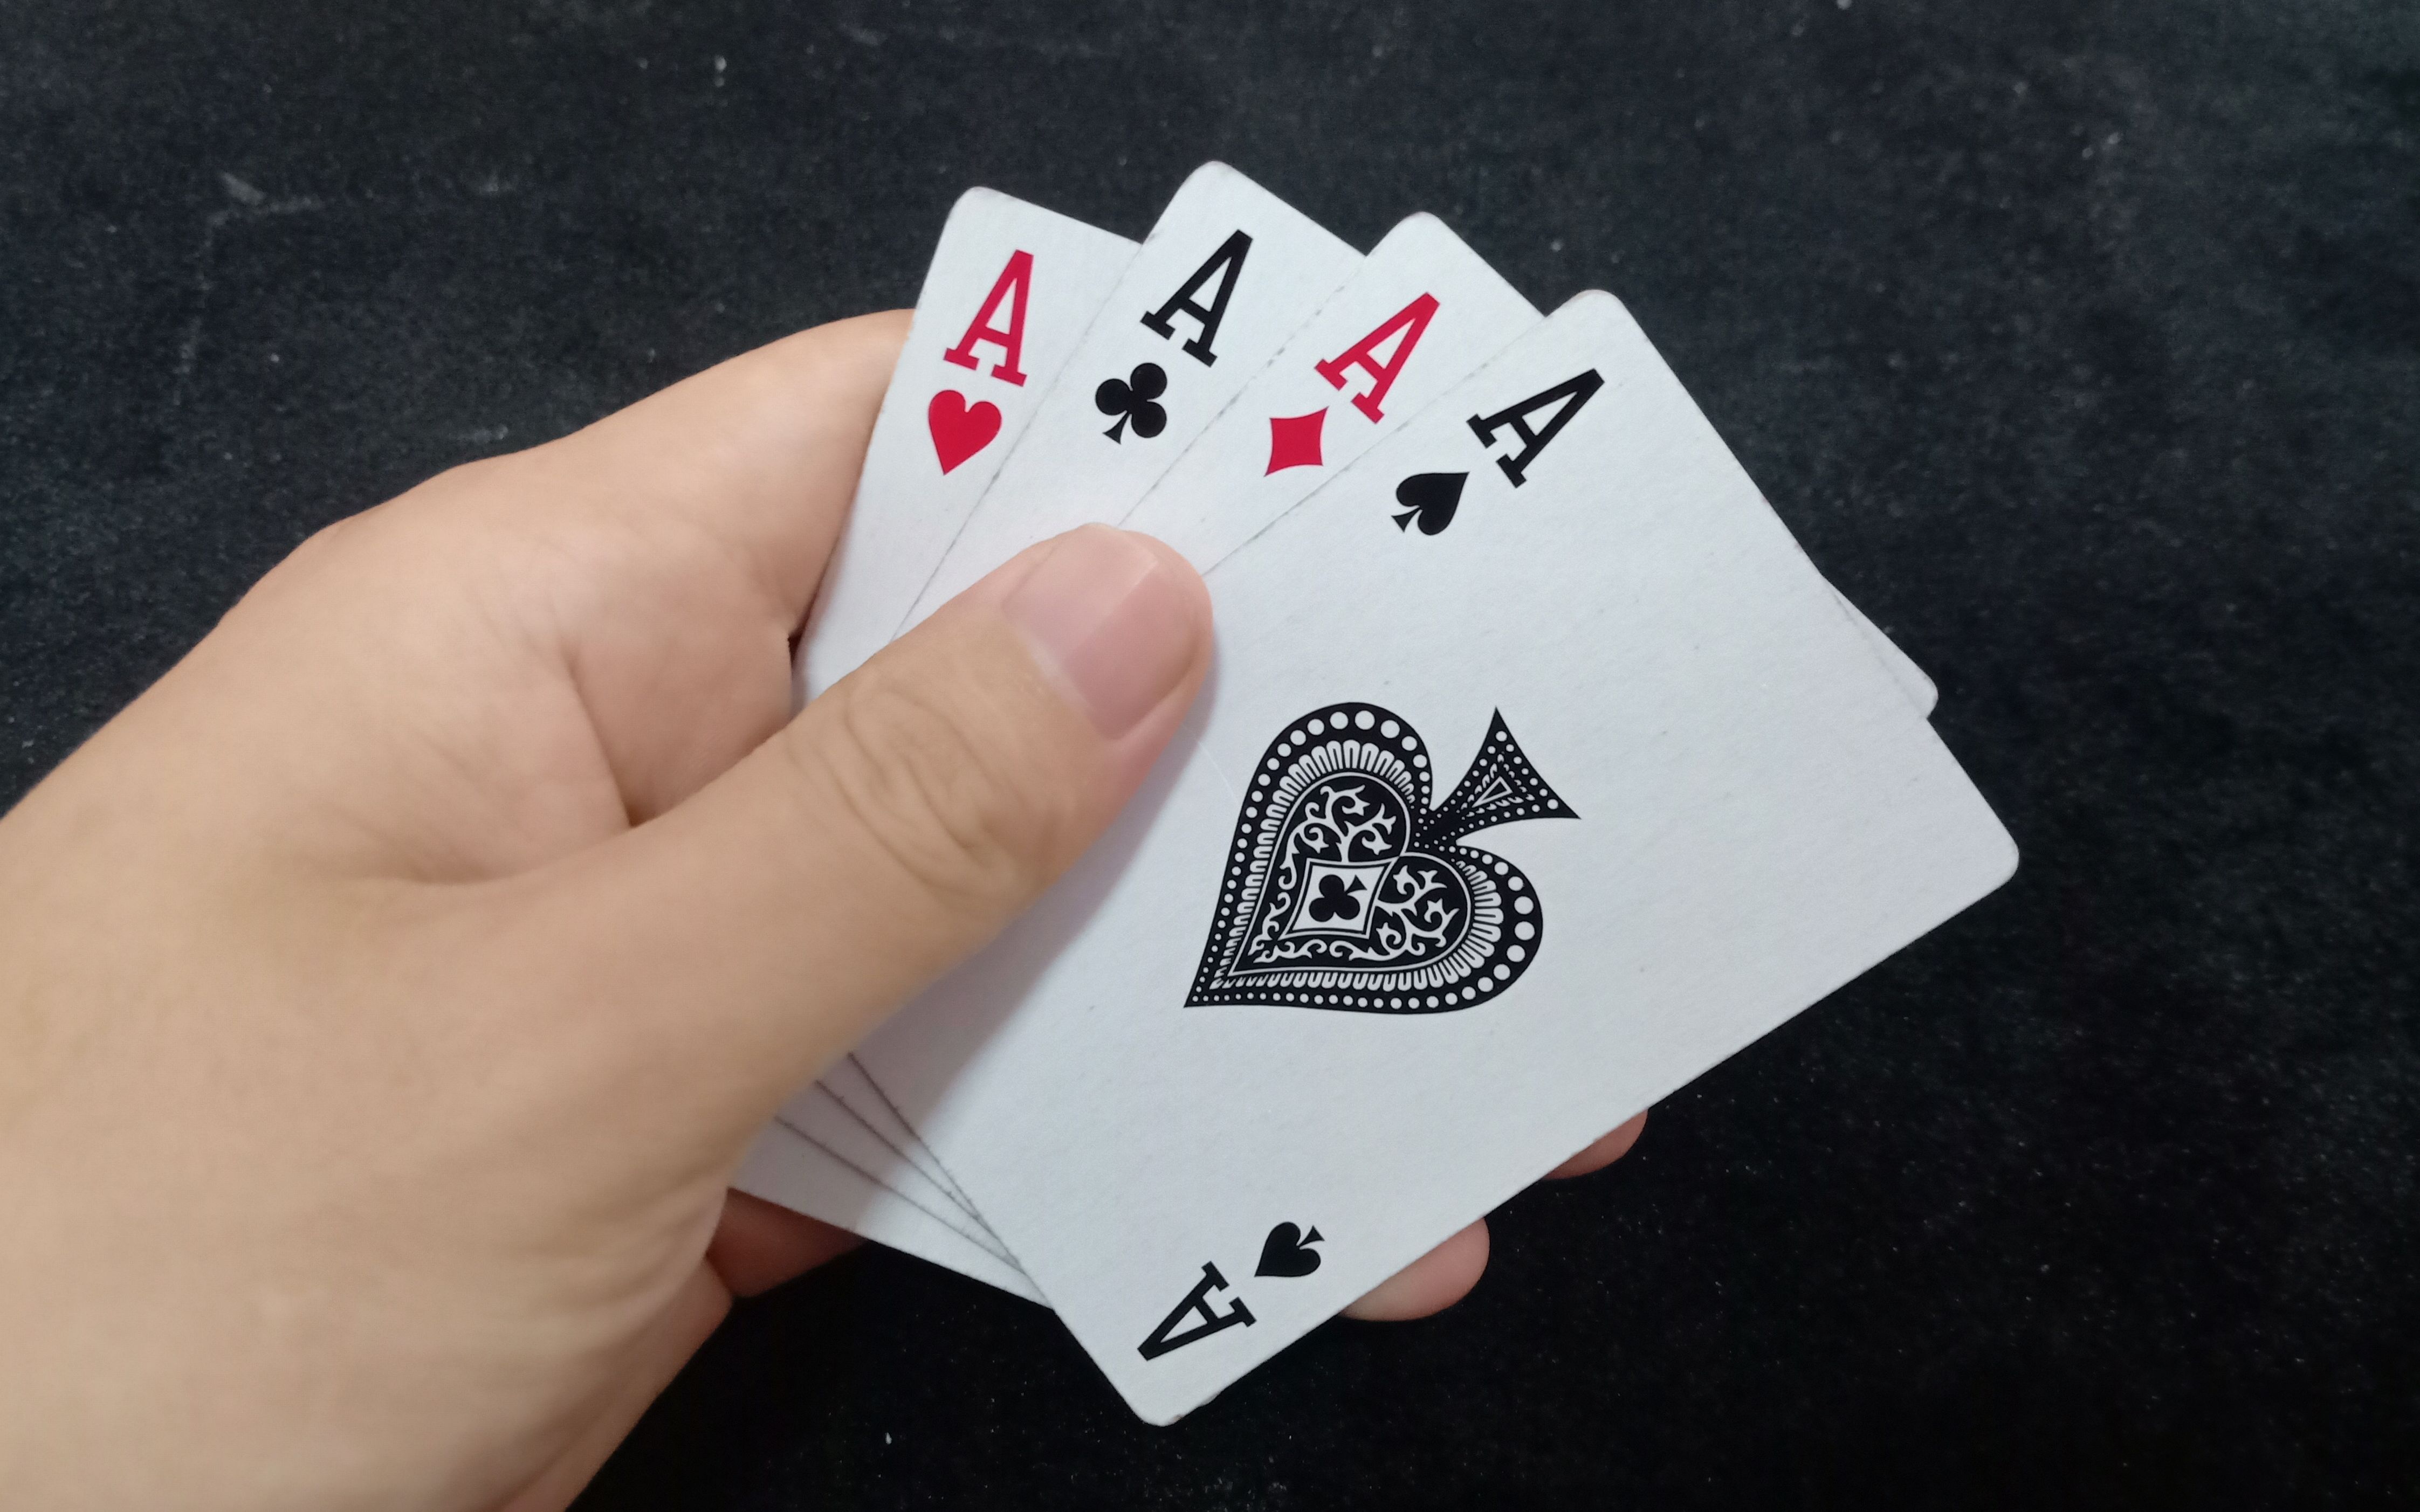 纸牌魔术教学:教你用皮筋找出观众的牌！-魔术阿龙-魔术阿龙-哔哩哔哩视频